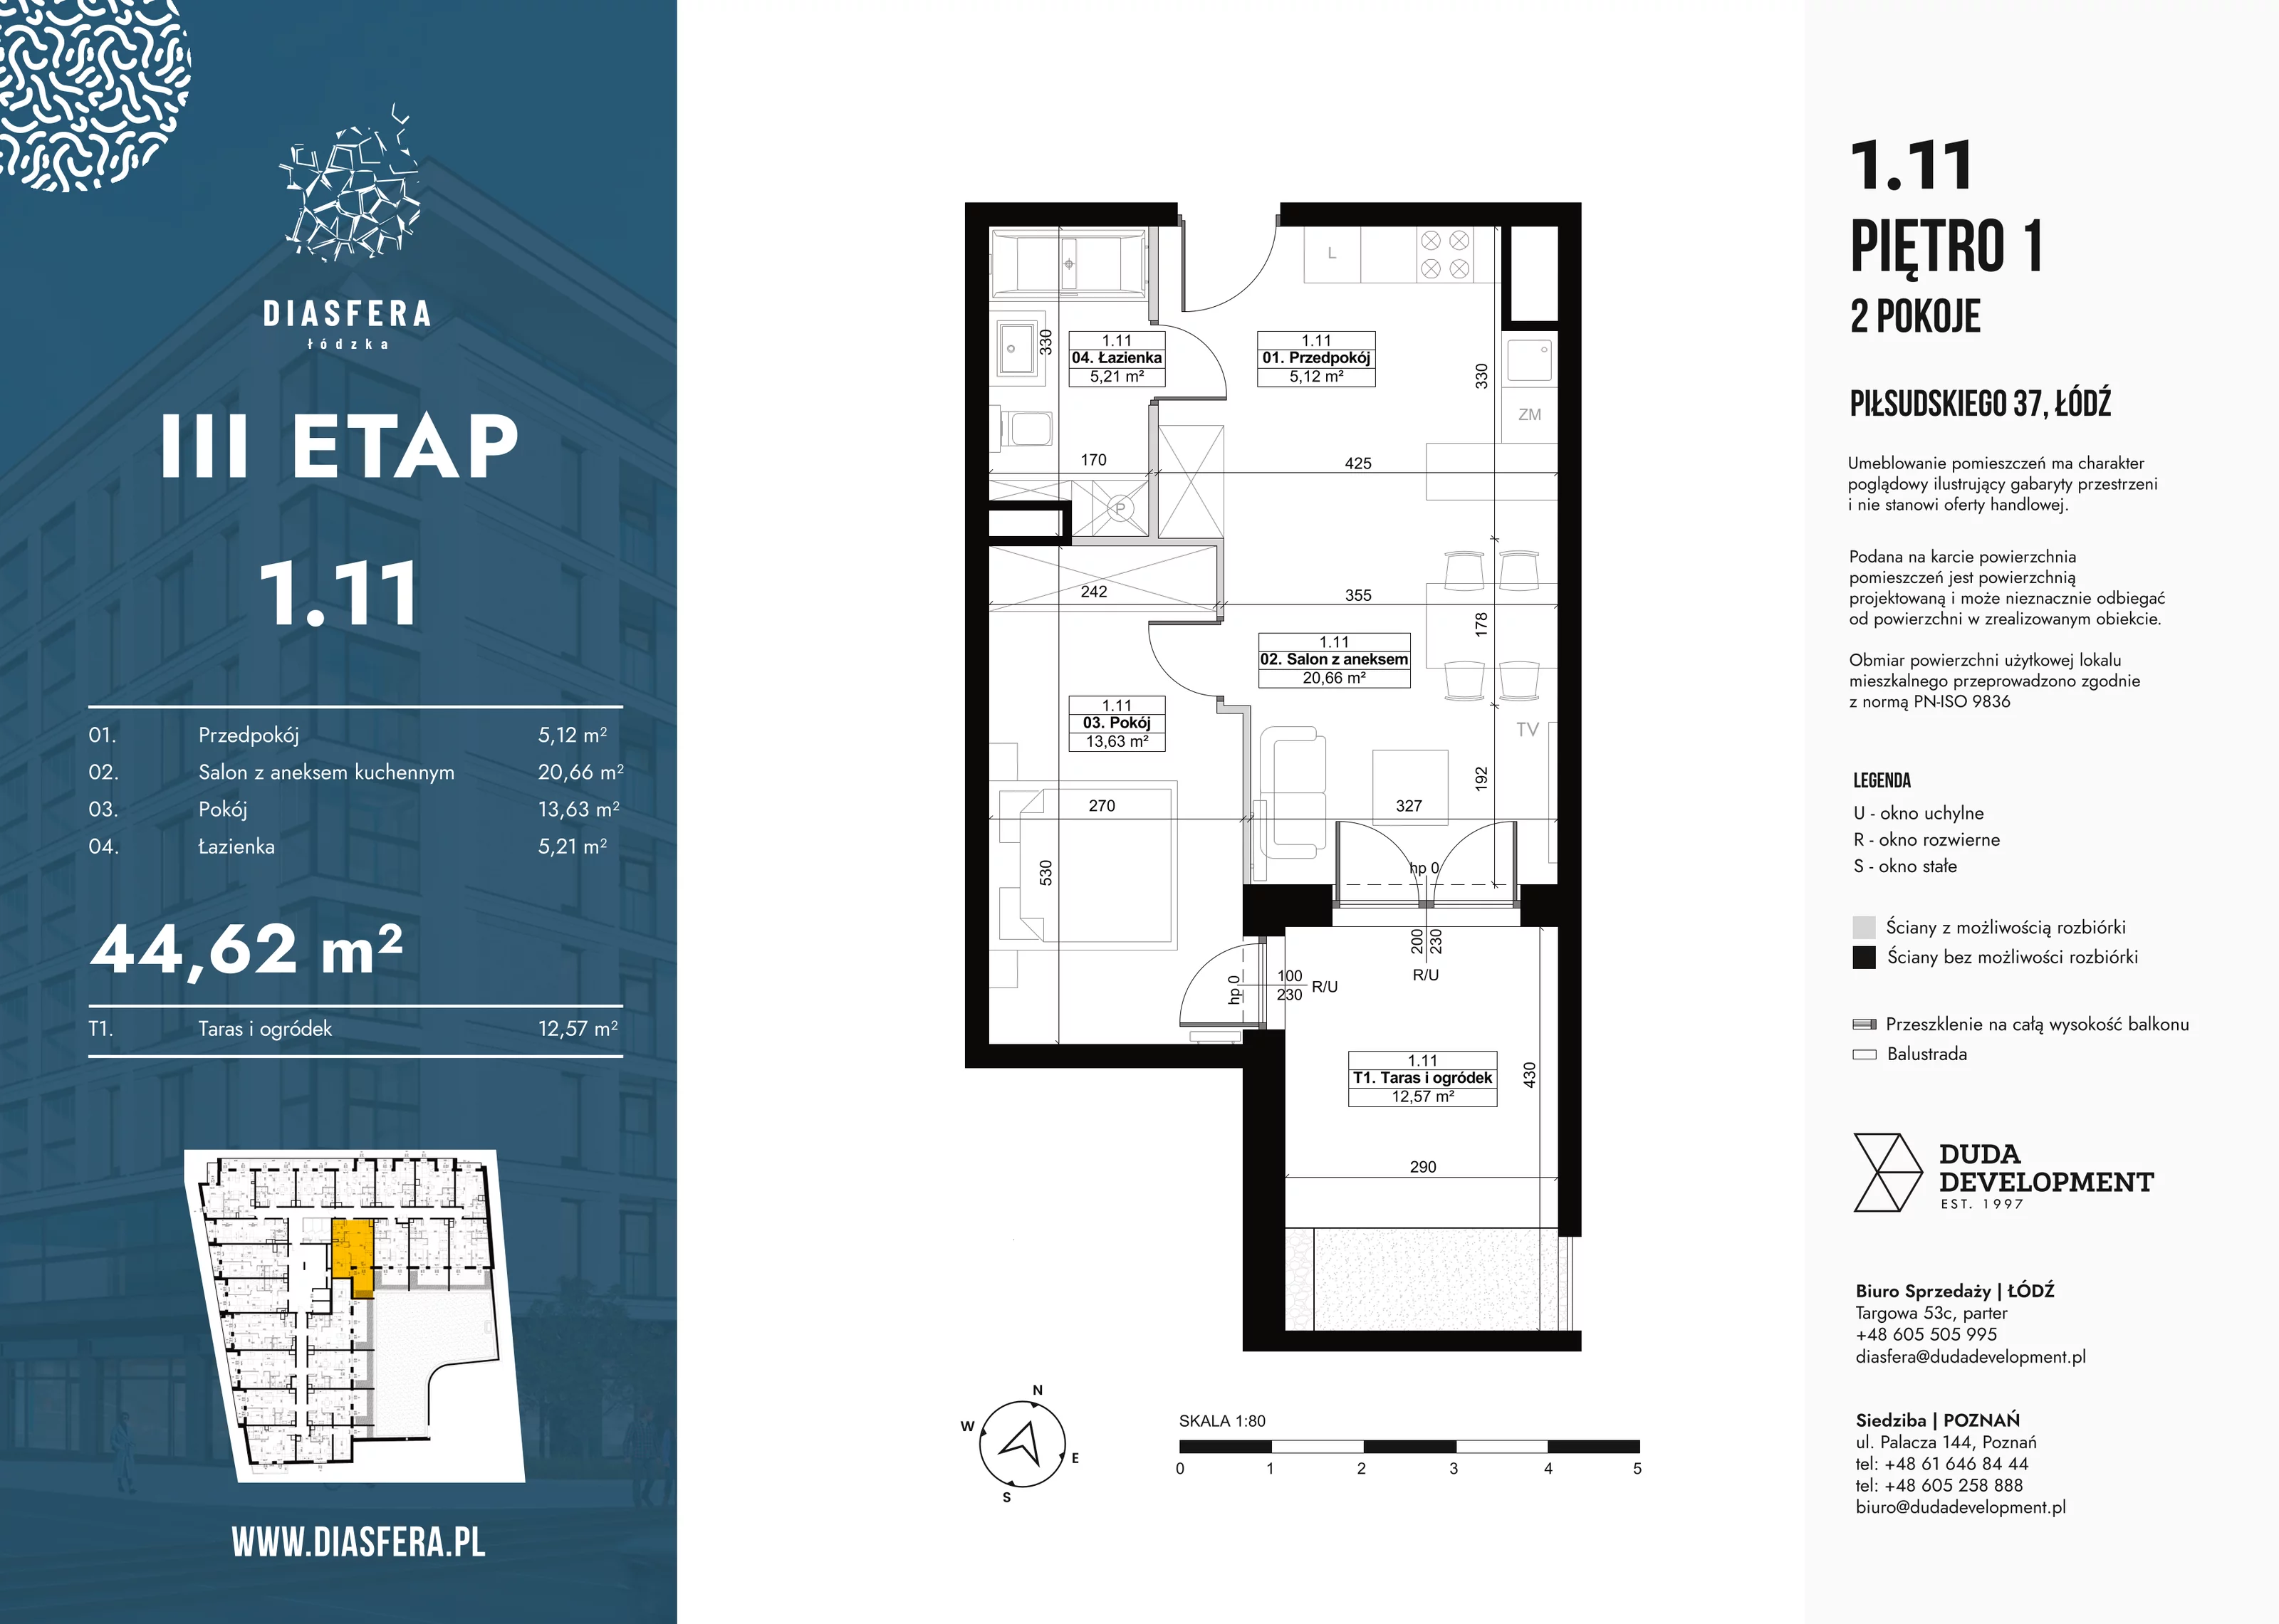 Mieszkanie 44,62 m², piętro 1, oferta nr 1_11, Diasfera III, Łódź, Śródmieście, al. Piłsudskiego 37